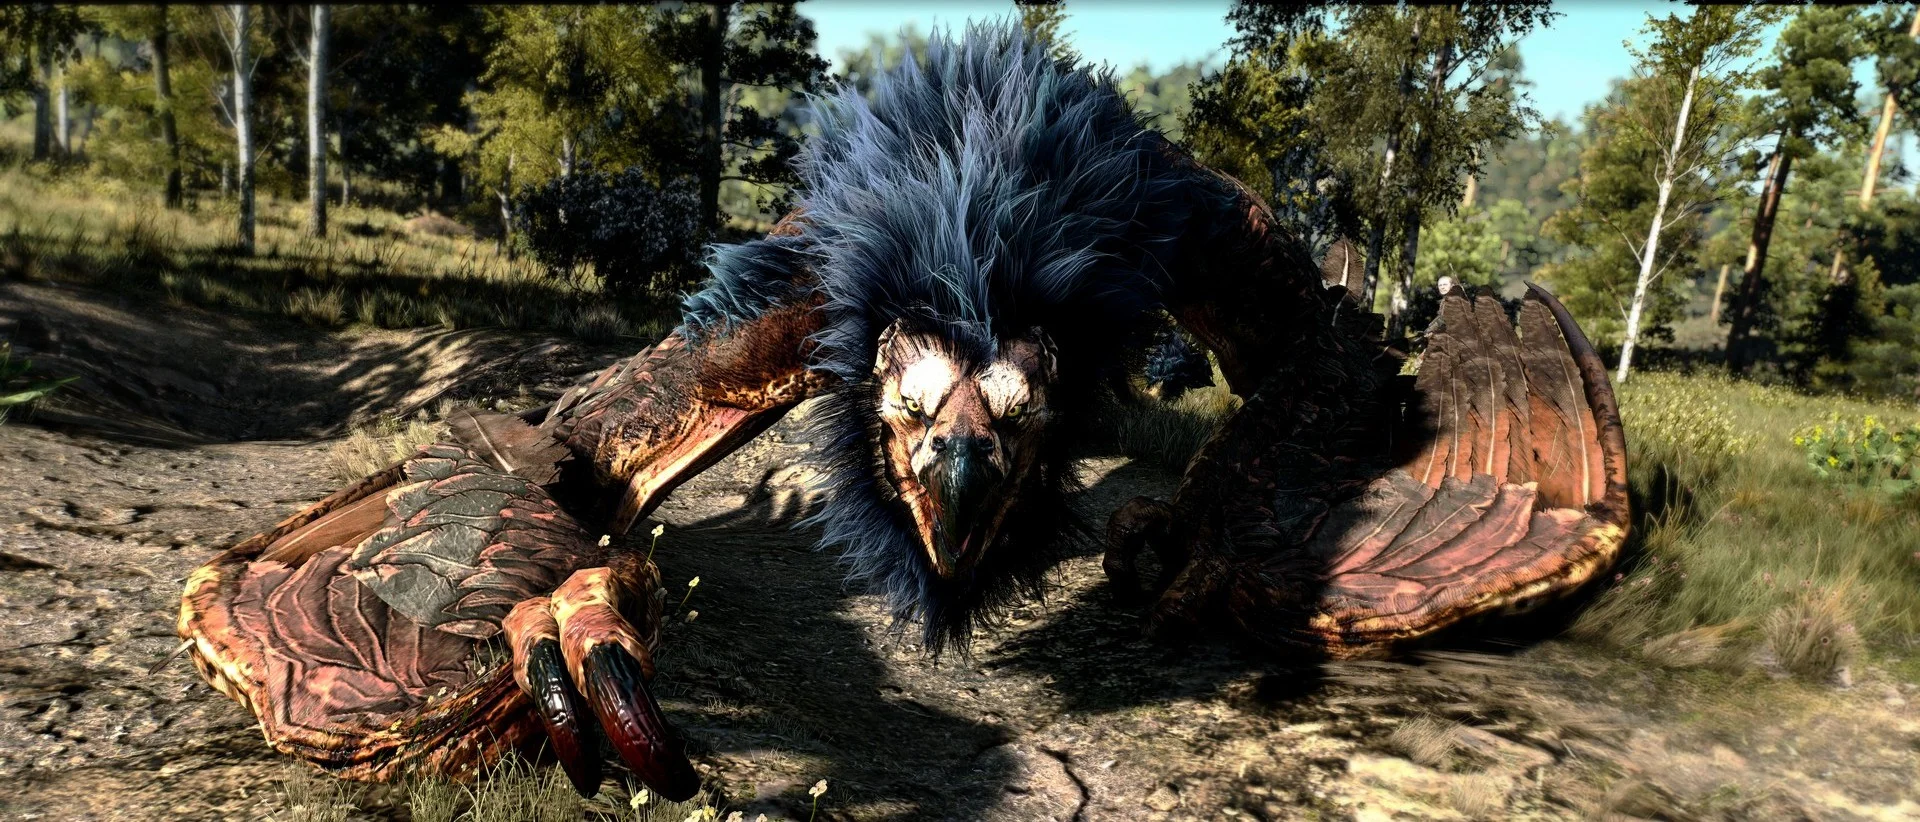 Новый мод для ​The Witcher 3: Wild Hunt﻿ значительно улучшил внешний вид монстров - фото 1